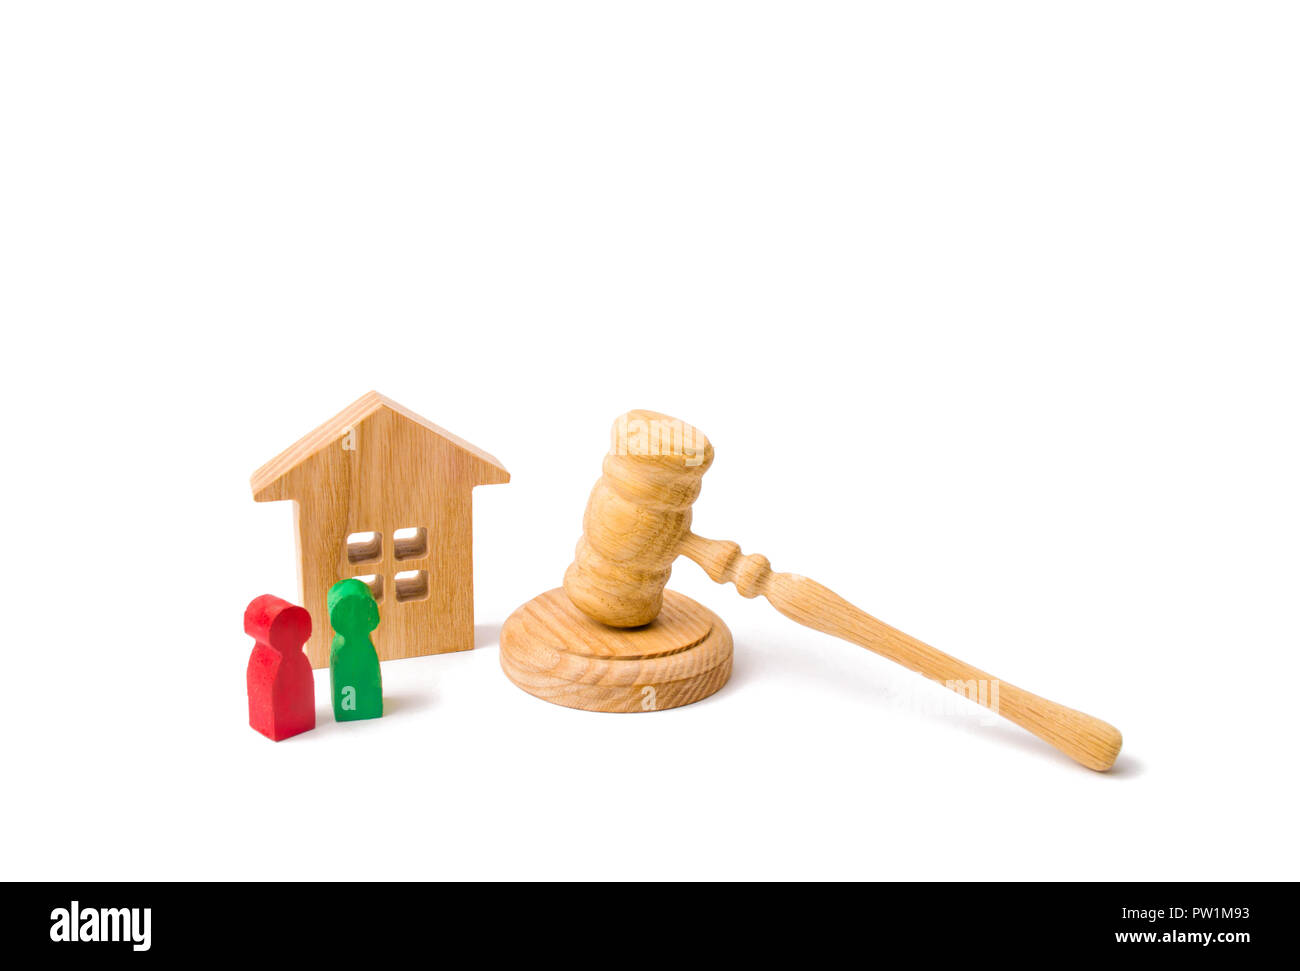 La notion de lois et règlements pour les locataires et propriétaires d'un immeuble résidentiel. Appartement Maison en bois avec des personnes clés, et d'un juge sur un marteau Banque D'Images